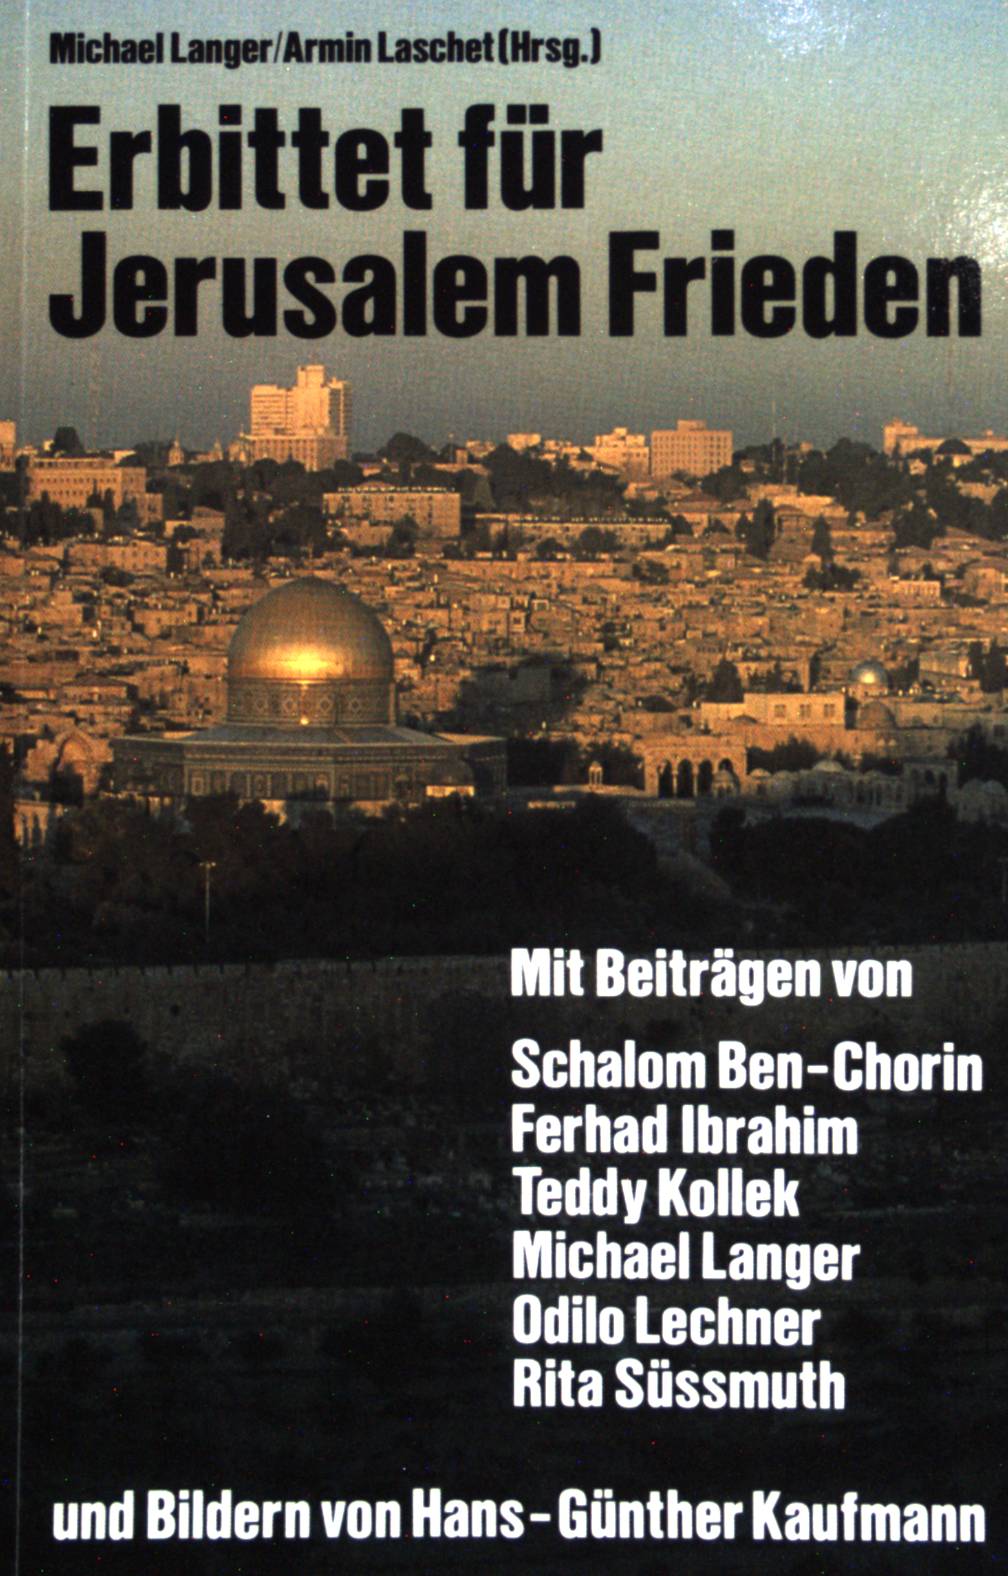 Erbittet für Jerusalem Frieden. Hoffnungen zwischen Vision und Wirklichkeit. - Langer, Michael und Armin Laschet